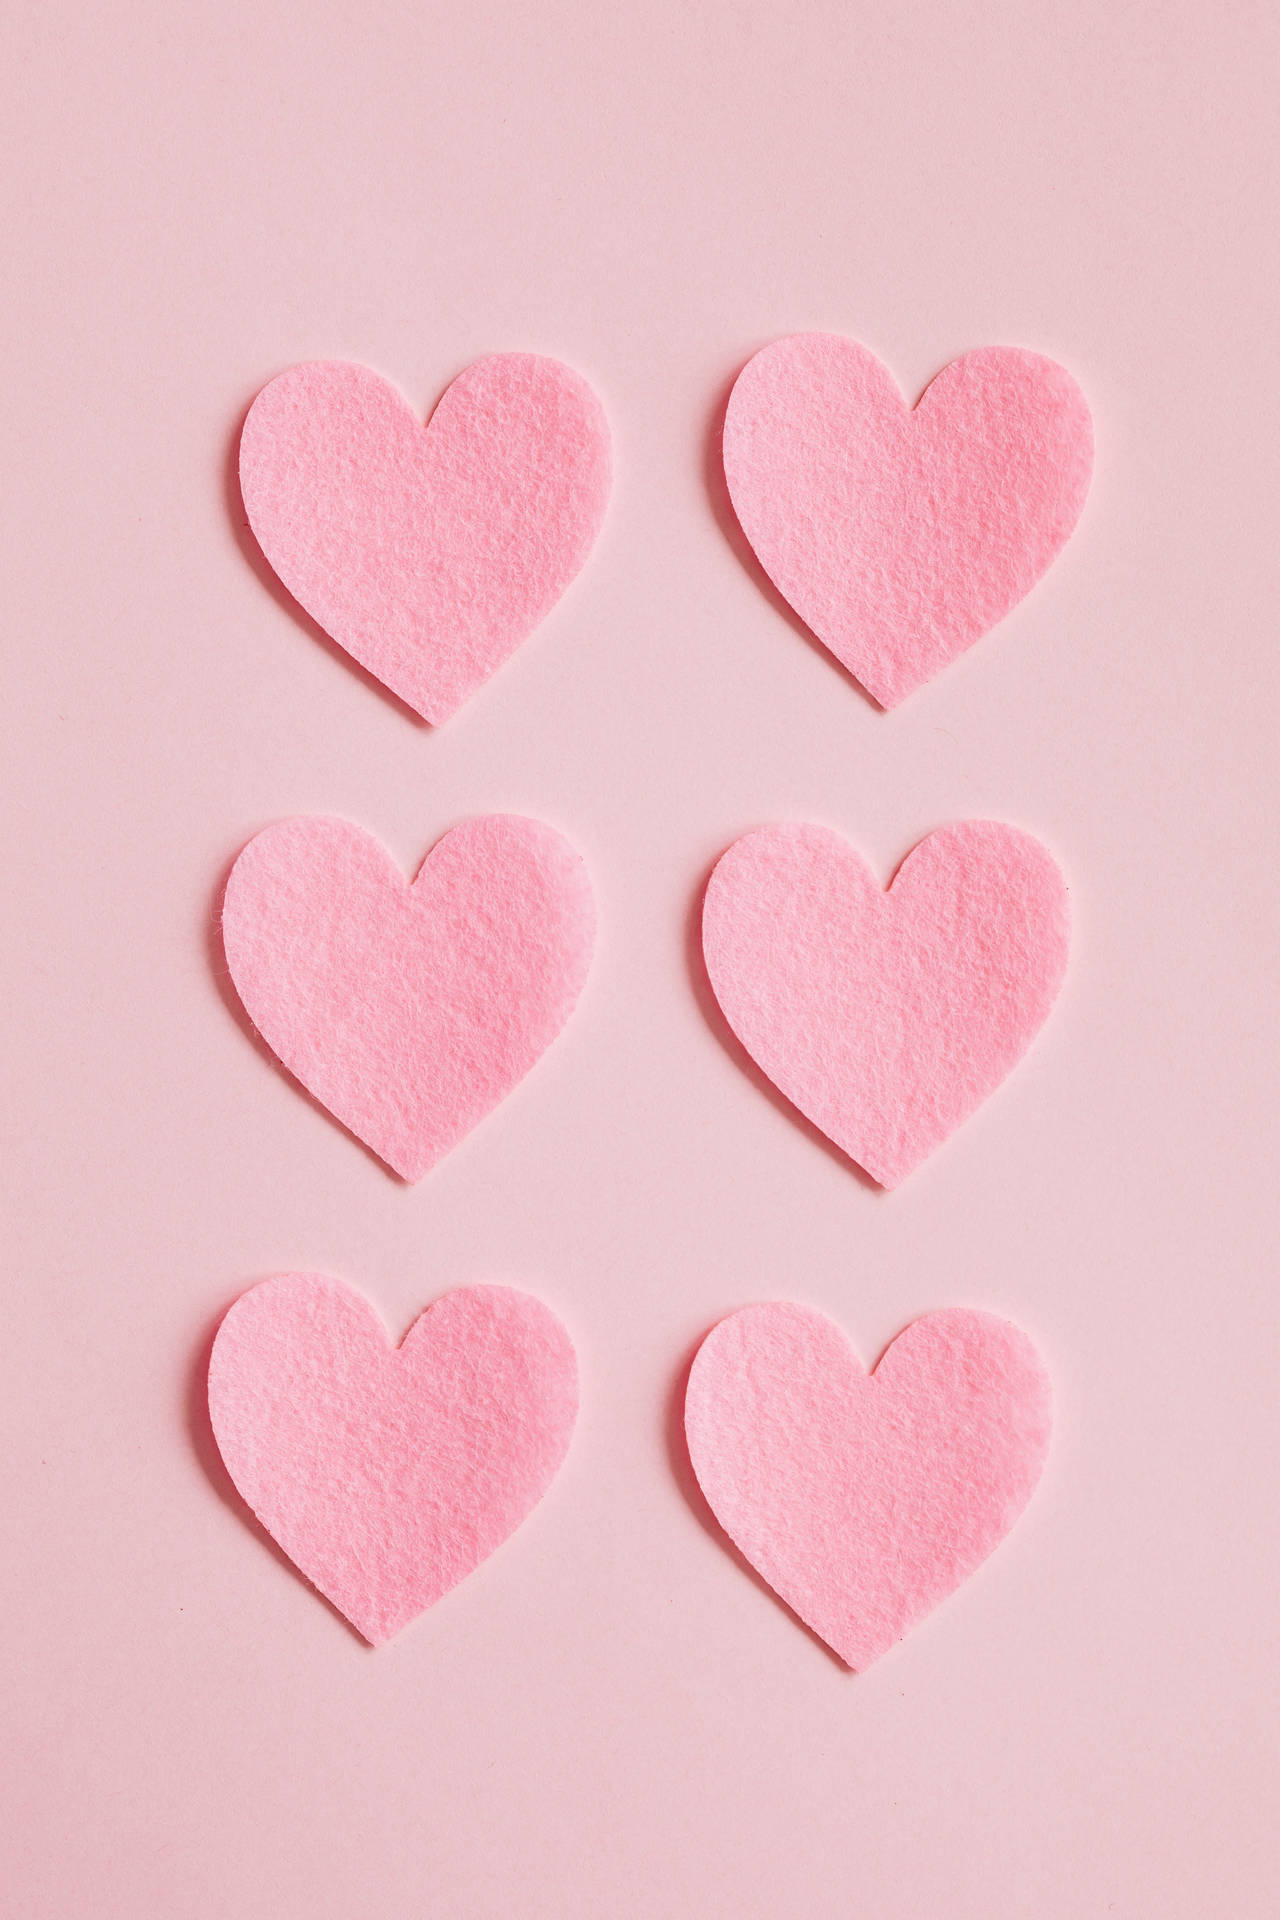 Cute Pastel Aesthetic Heart Cutouts